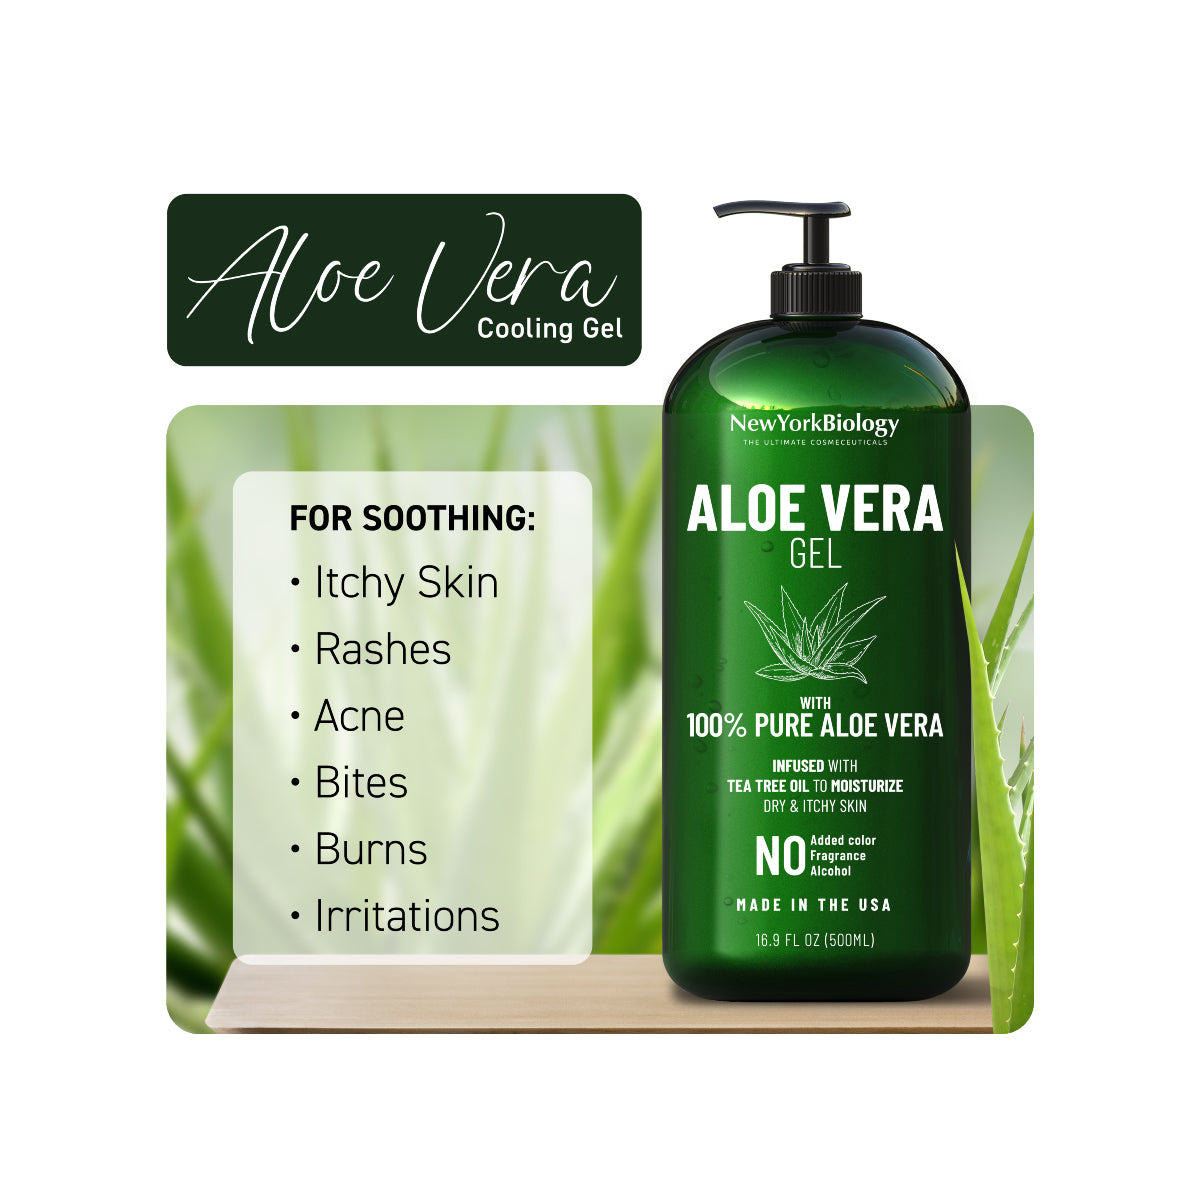 Aloe Vera Infused with Tea Tree Oil - 16 oz New York Biology